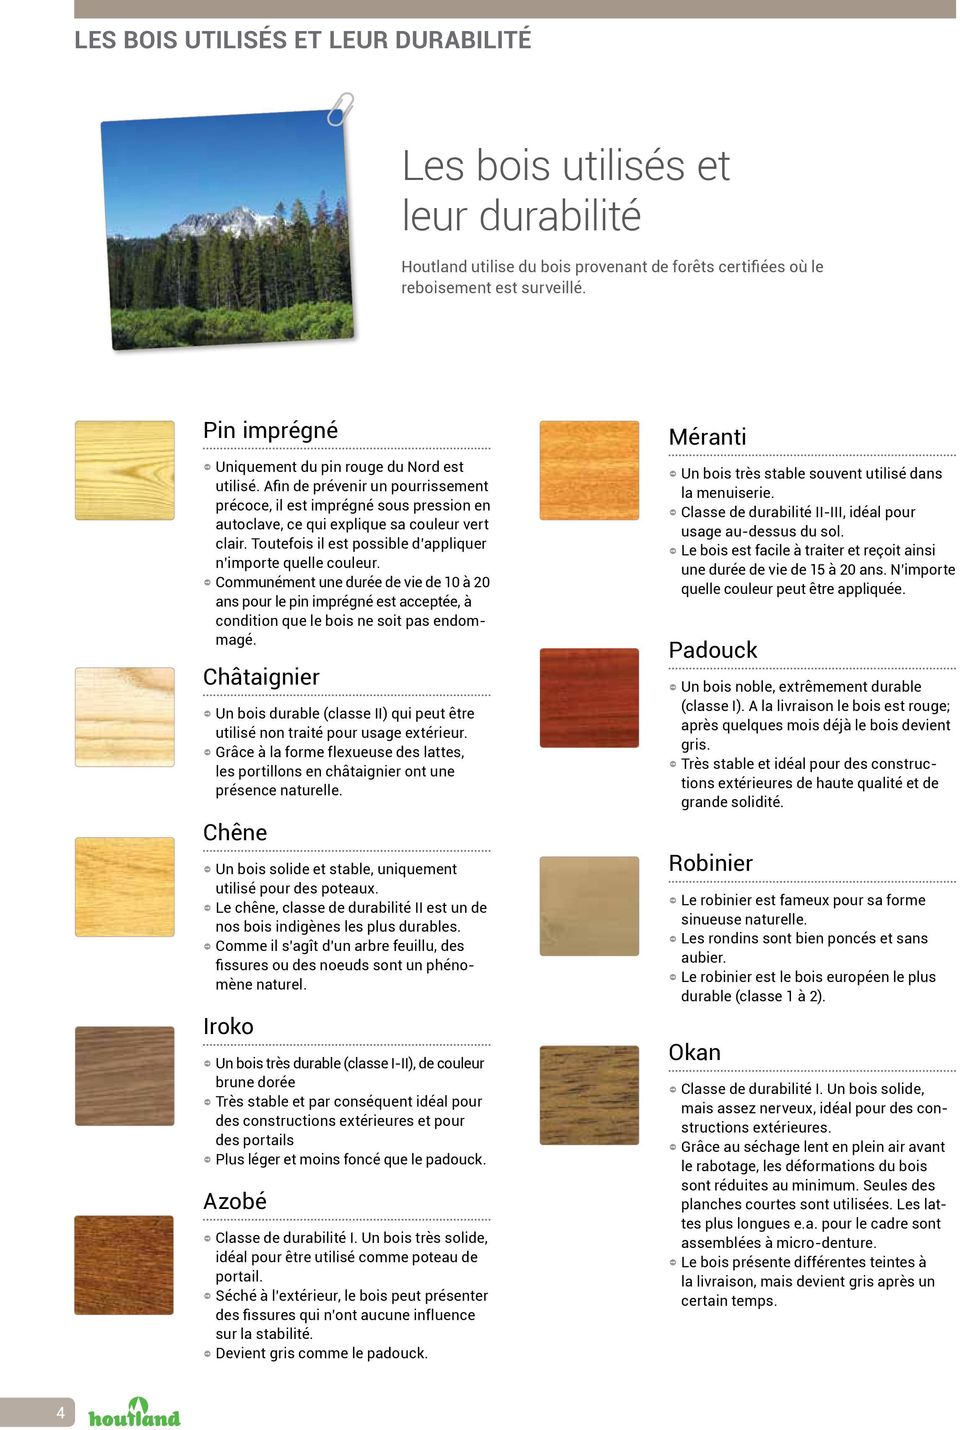 Toutefois il est possible d appliquer n importe quelle couleur. Communément une durée de vie de 10 à 20 ans pour le pin imprégné est acceptée, à condition que le bois ne soit pas endommagé.